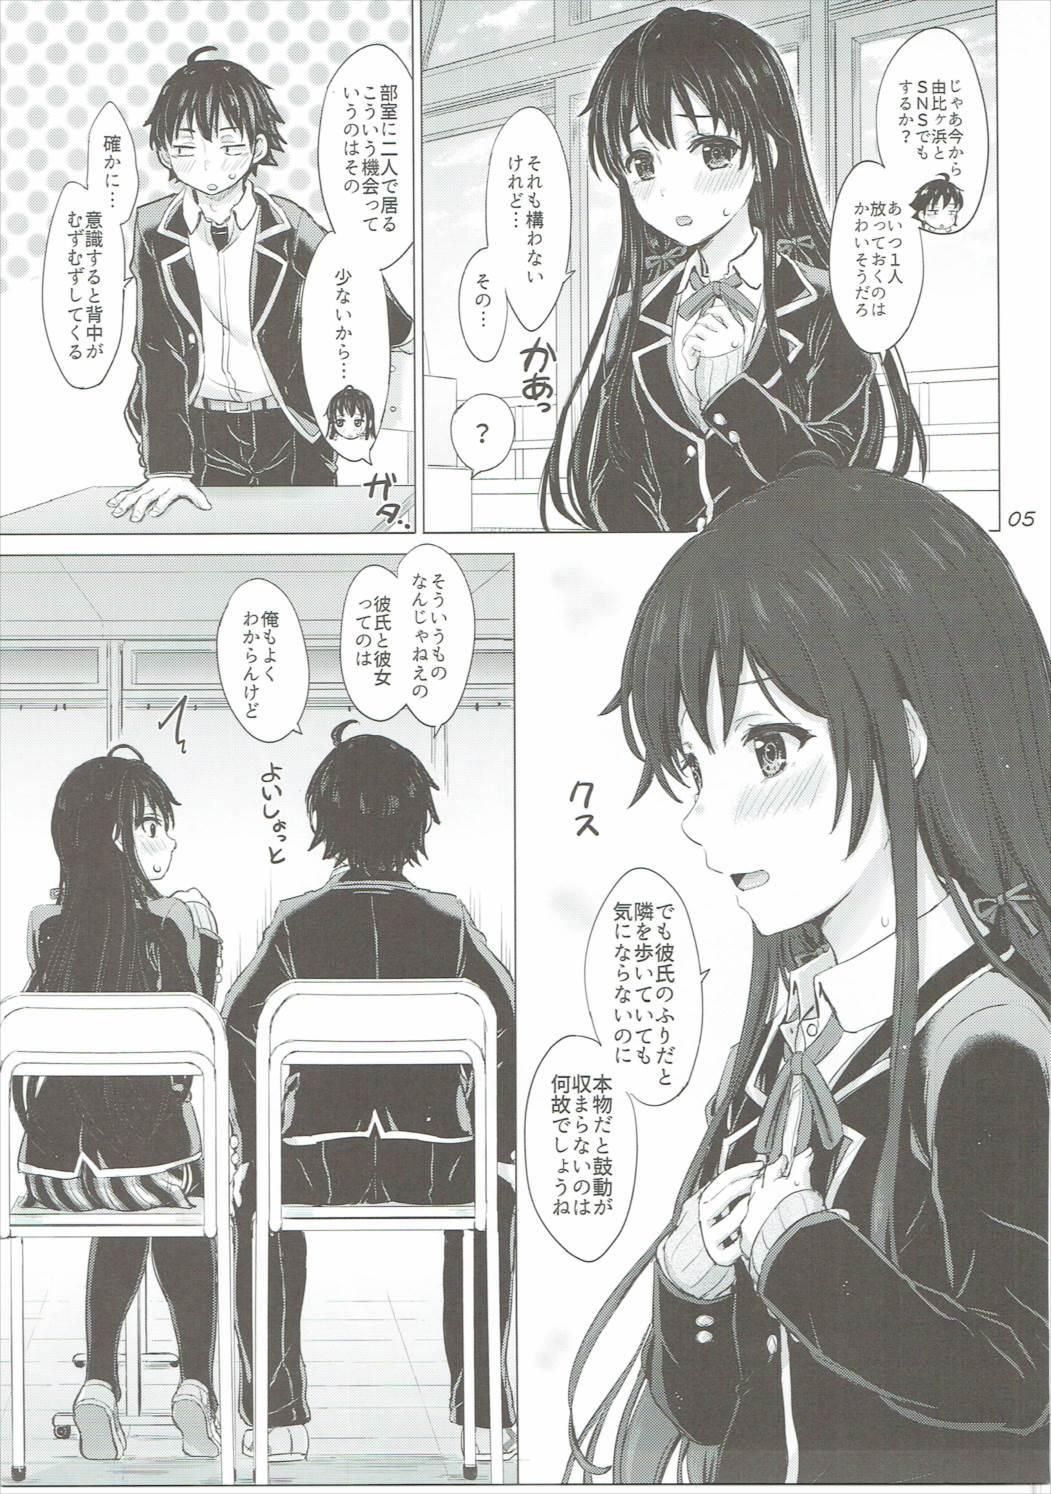 Adorable Yukinon Again. - Yahari ore no seishun love come wa machigatteiru Pendeja - Page 4